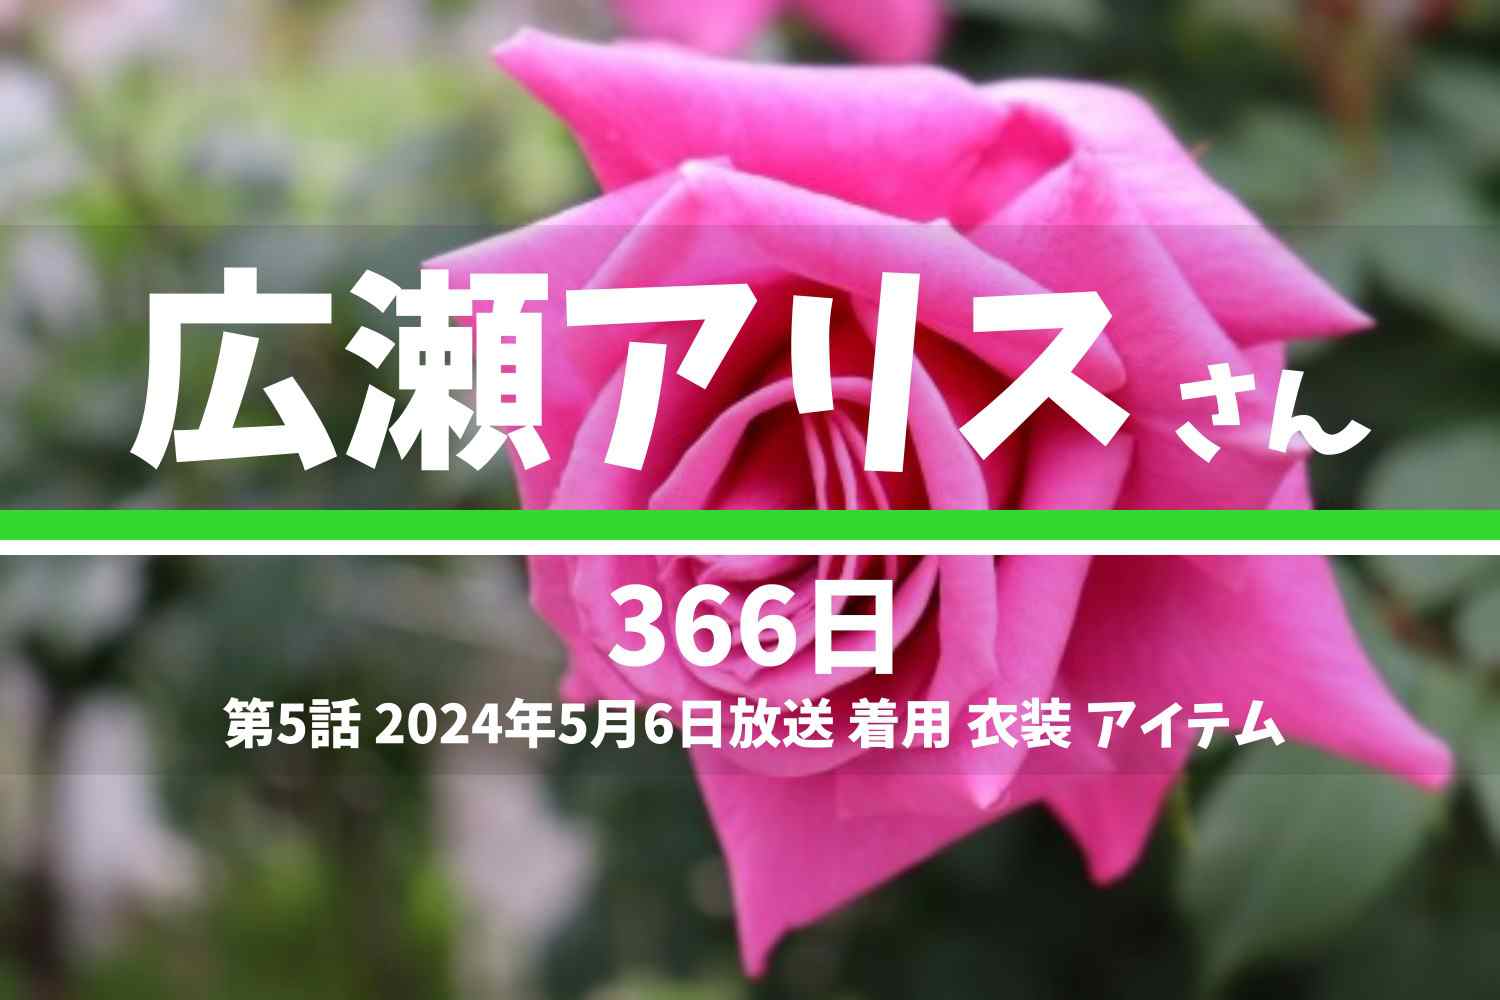 366日 広瀬アリスさん テレビドラマ 衣装 2024年5月6日放送